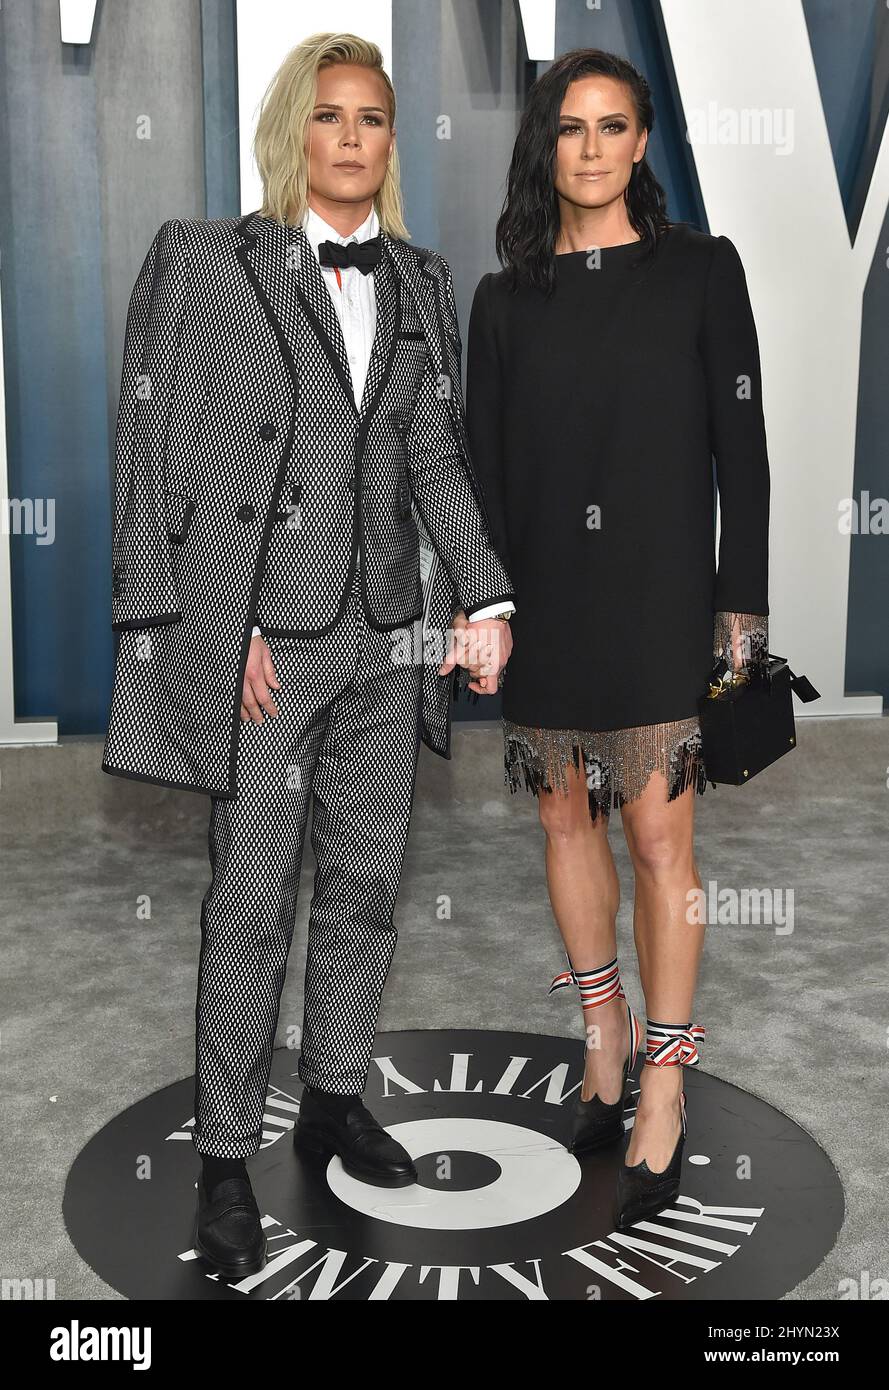 Ashlyn Harris et Ali Krieger assistent à la Vanity Fair Oscar Party 2020 qui s'est tenue au Wallis Annenberg Center for the Performing Arts à Beverly Hills, en Californie Banque D'Images